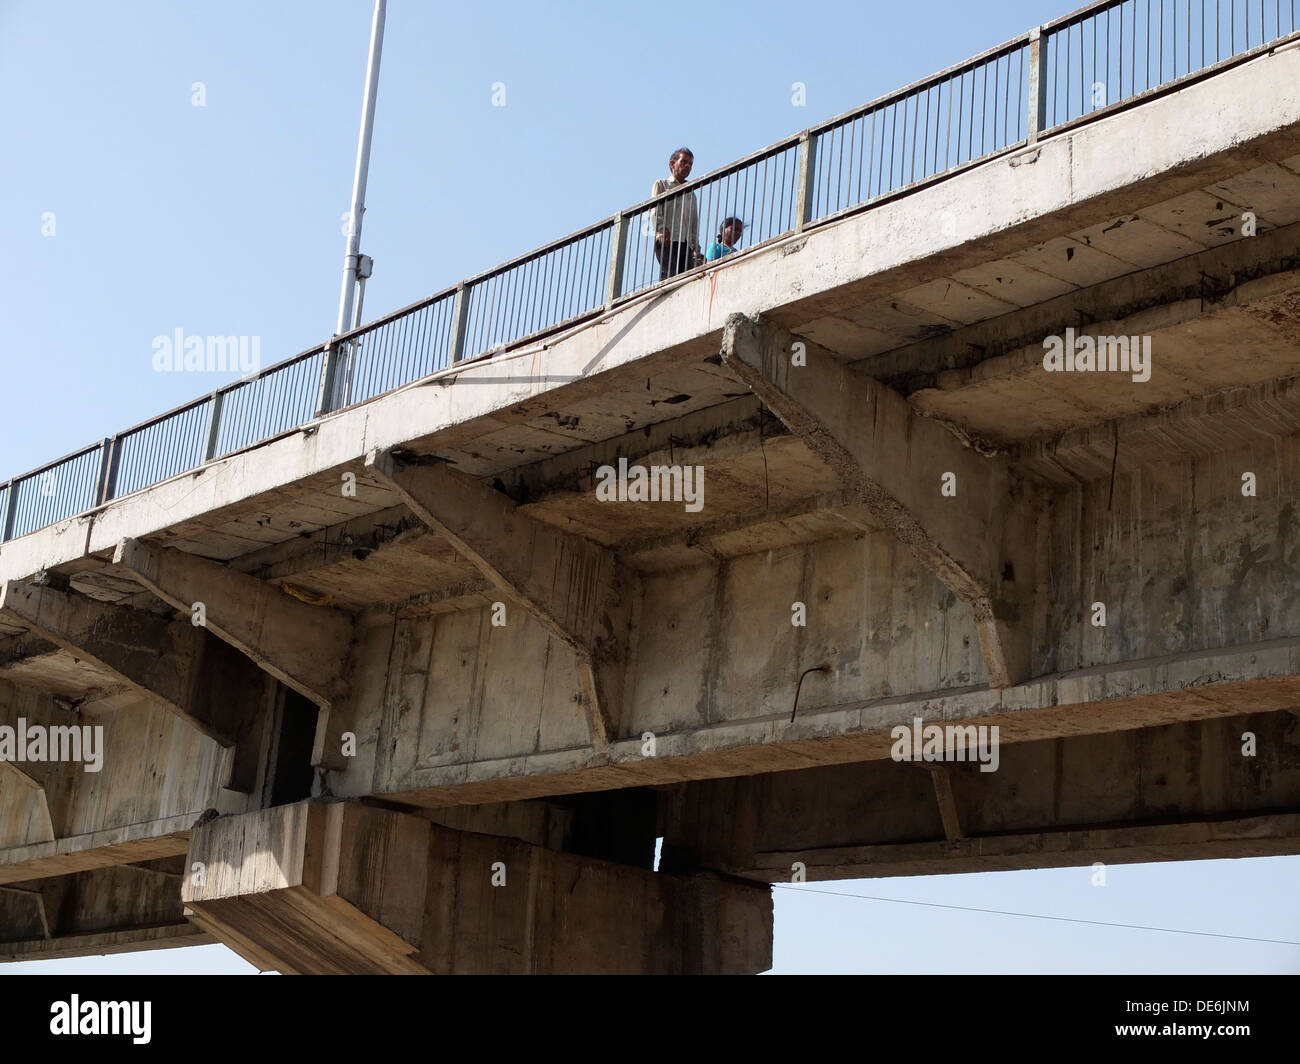 Indien, Uttar Pradesh, Agra, baute neu Brücke über den Fluss Yamuna zeigen schlampige Bauqualität Stockfoto